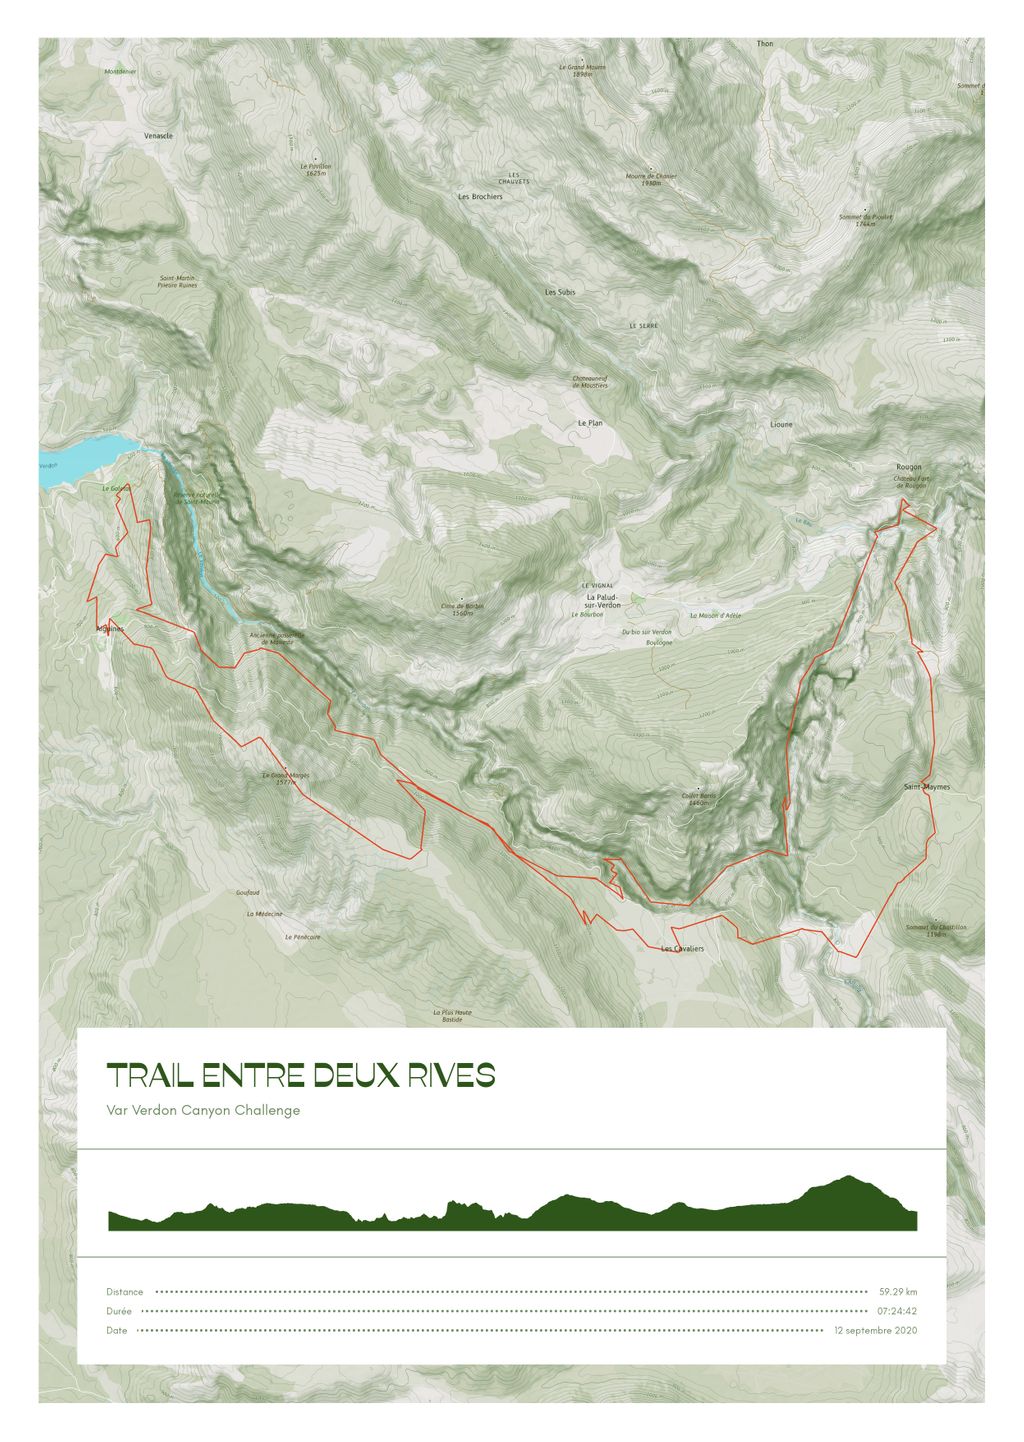 Póster con un mapa de Trail entre deux rives